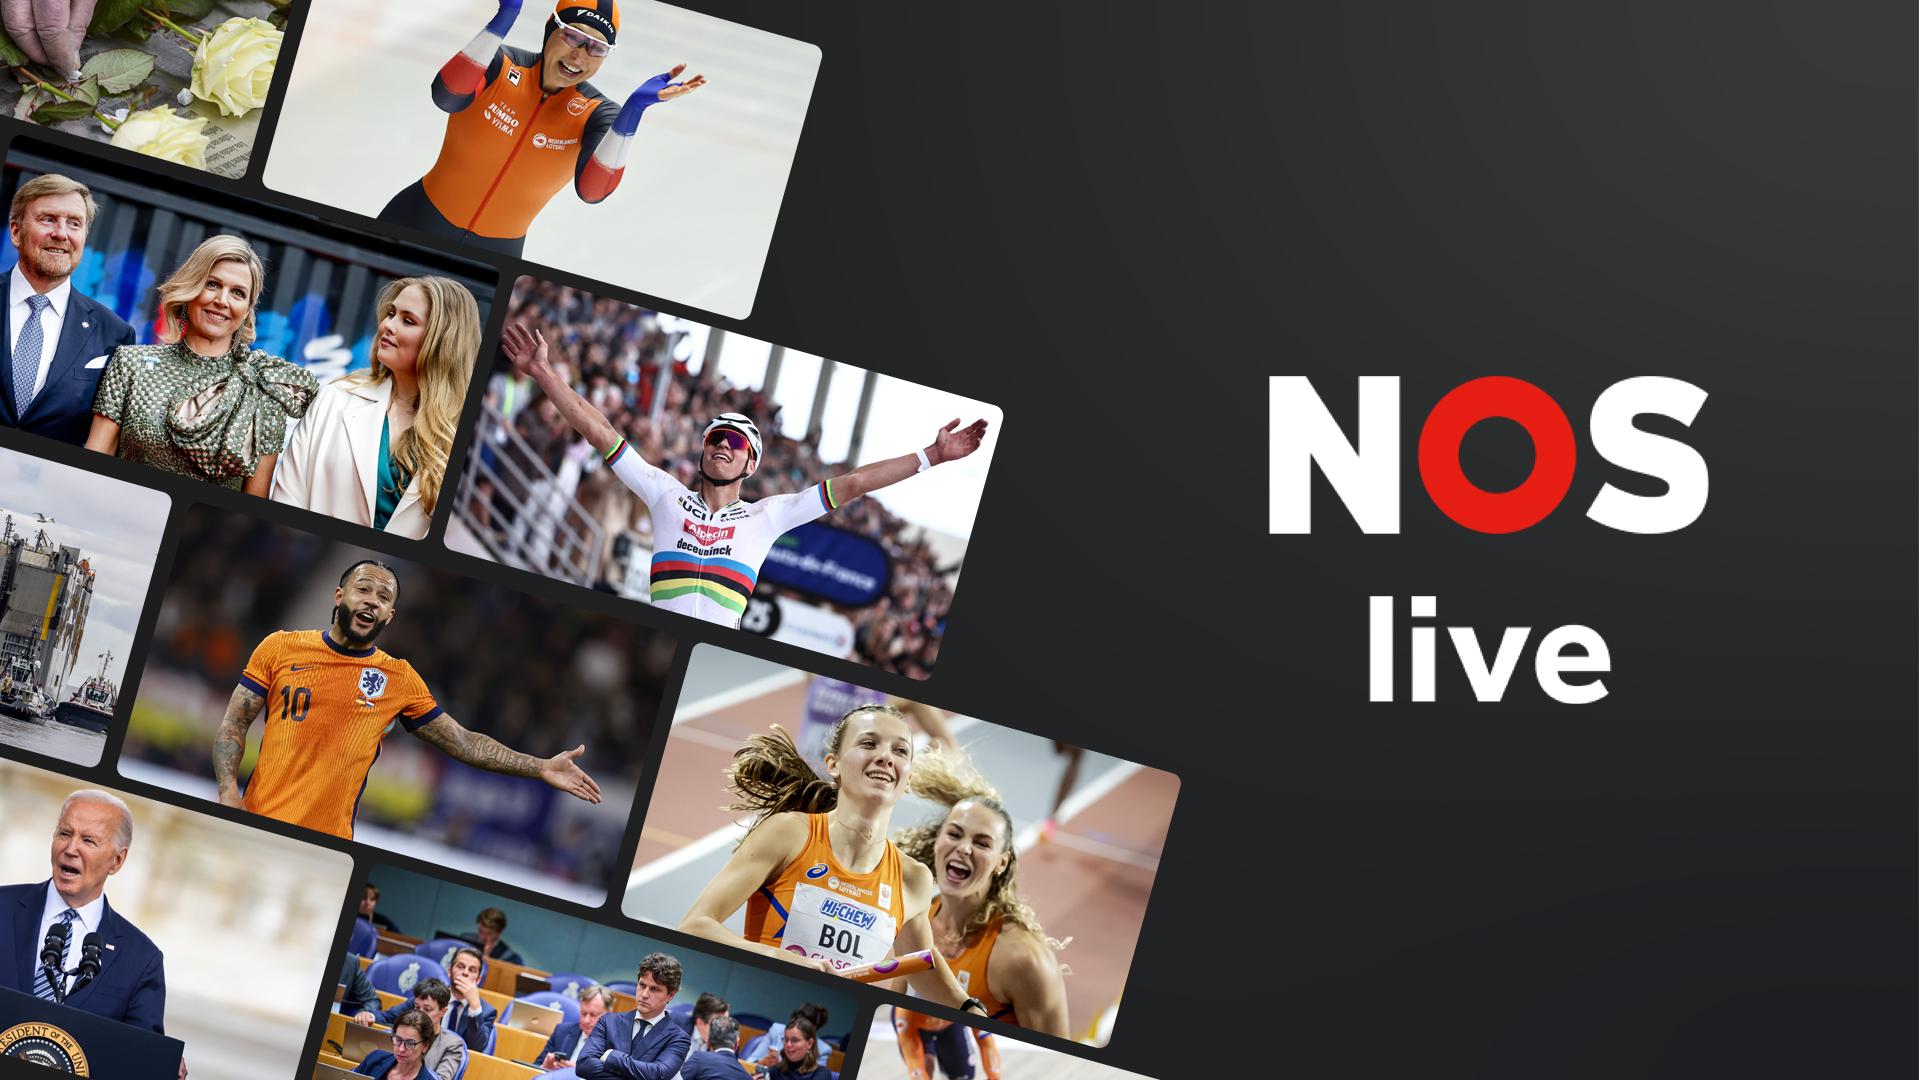 Meer informatie over "NOS Live-app nu beschikbaar op platforms van Ziggo en KPN"